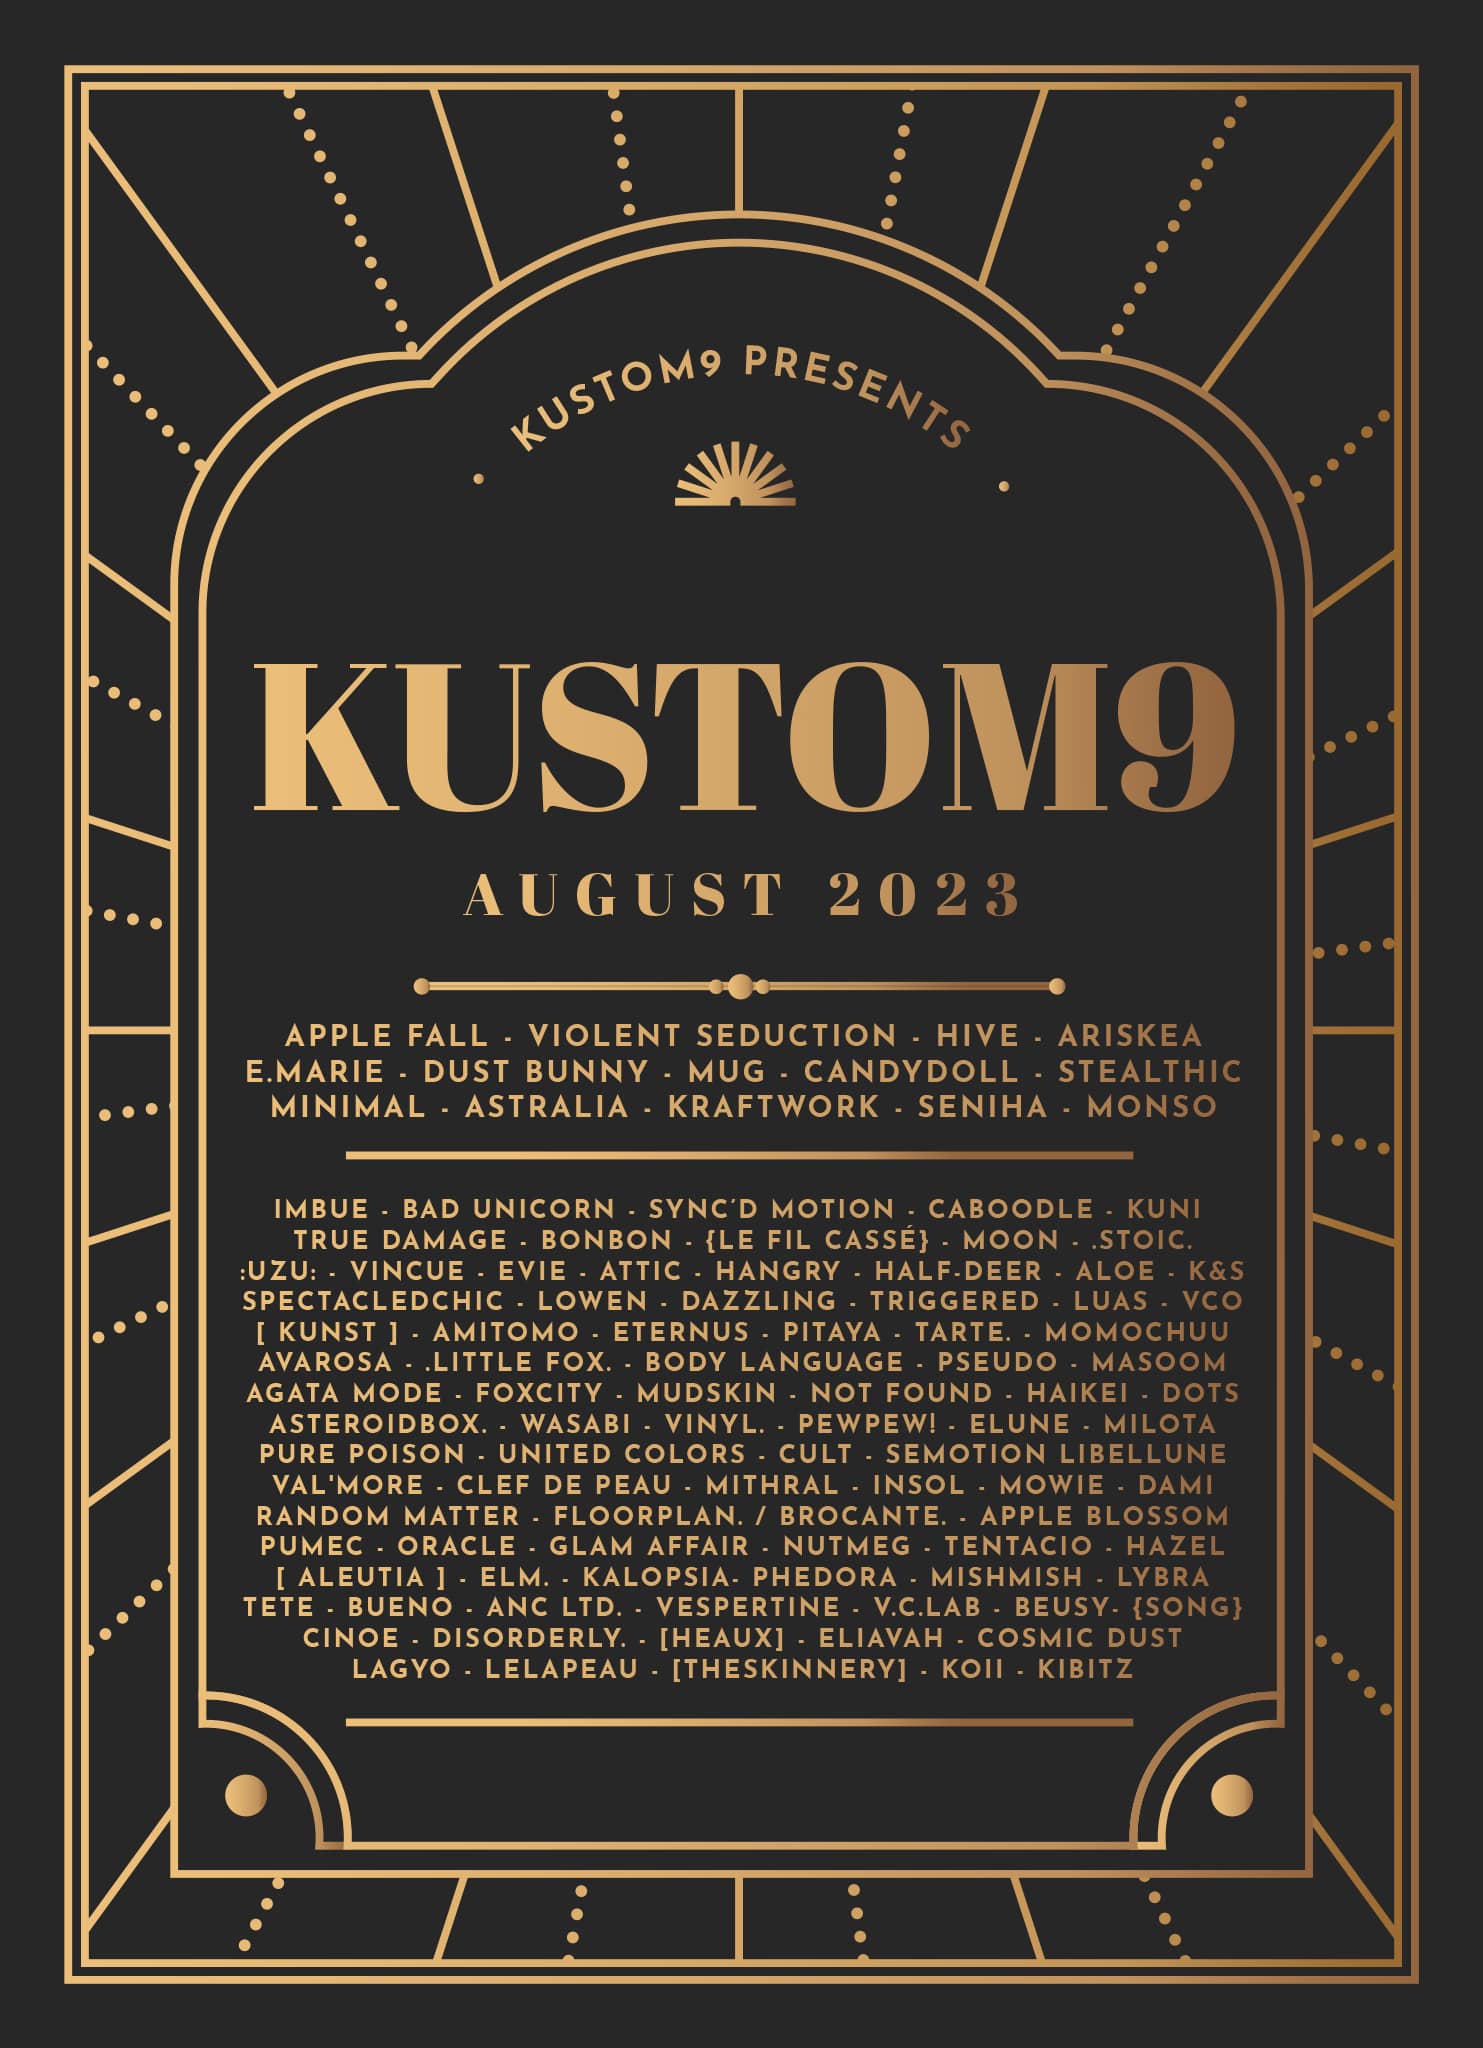 Press Release – Kustom9